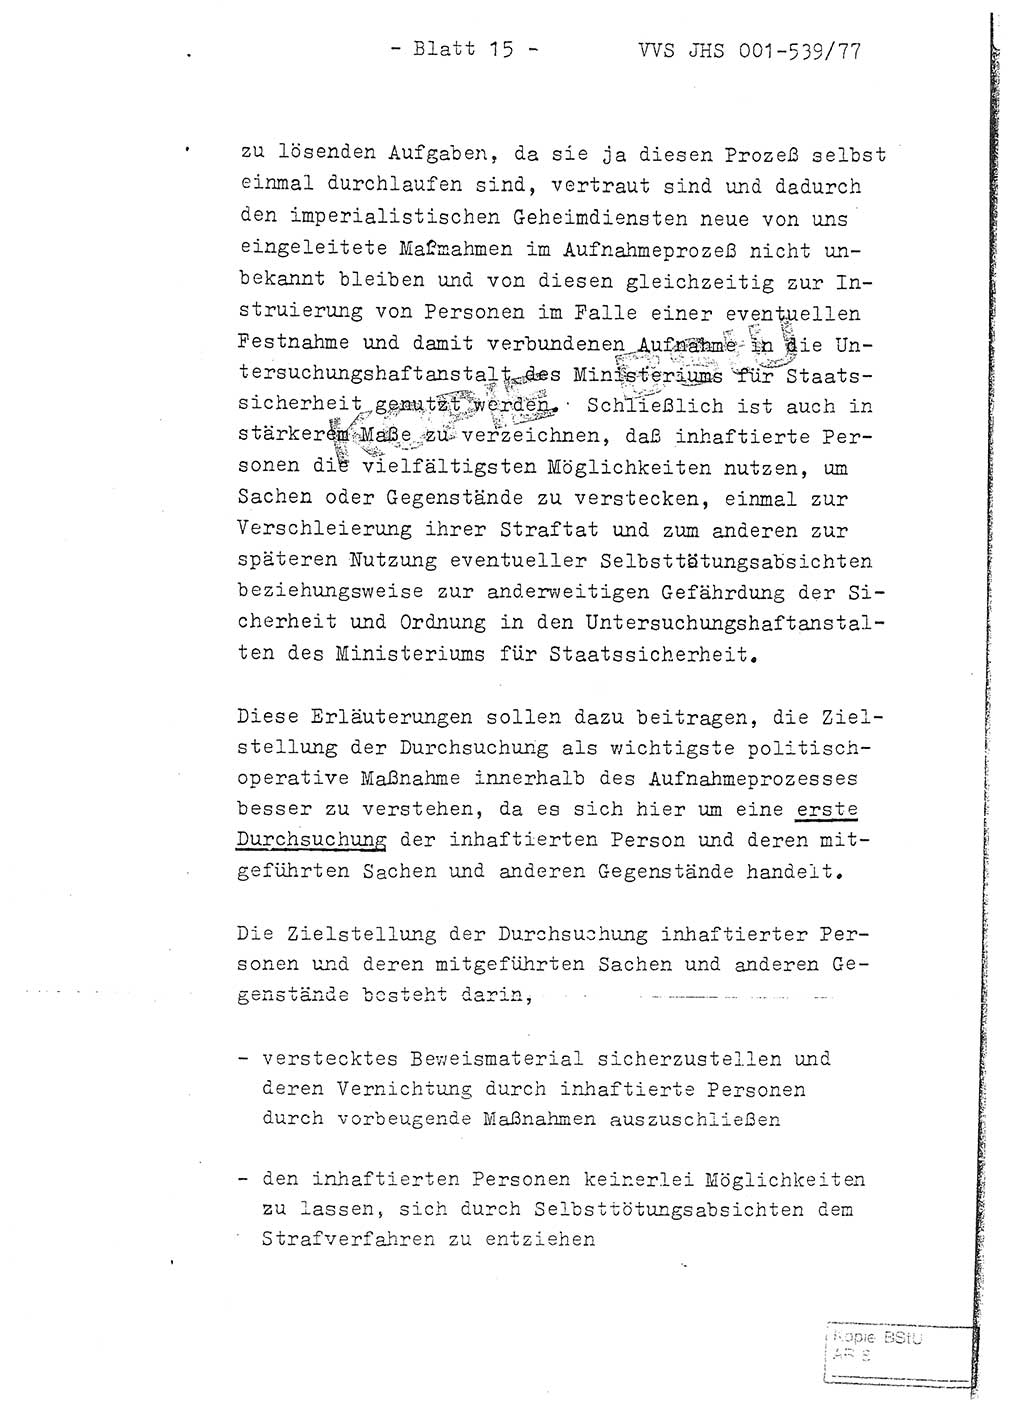 Fachschulabschlußarbeit Hauptmann Dietrich Jung (Abt. ⅩⅣ), Leutnant Klaus Klötzner (Abt. ⅩⅣ), Ministerium für Staatssicherheit (MfS) [Deutsche Demokratische Republik (DDR)], Juristische Hochschule (JHS), Vertrauliche Verschlußsache (VVS) 001-539/77, Potsdam 1978, Seite 15 (FS-Abschl.-Arb. MfS DDR JHS VVS 001-539/77 1978, S. 15)